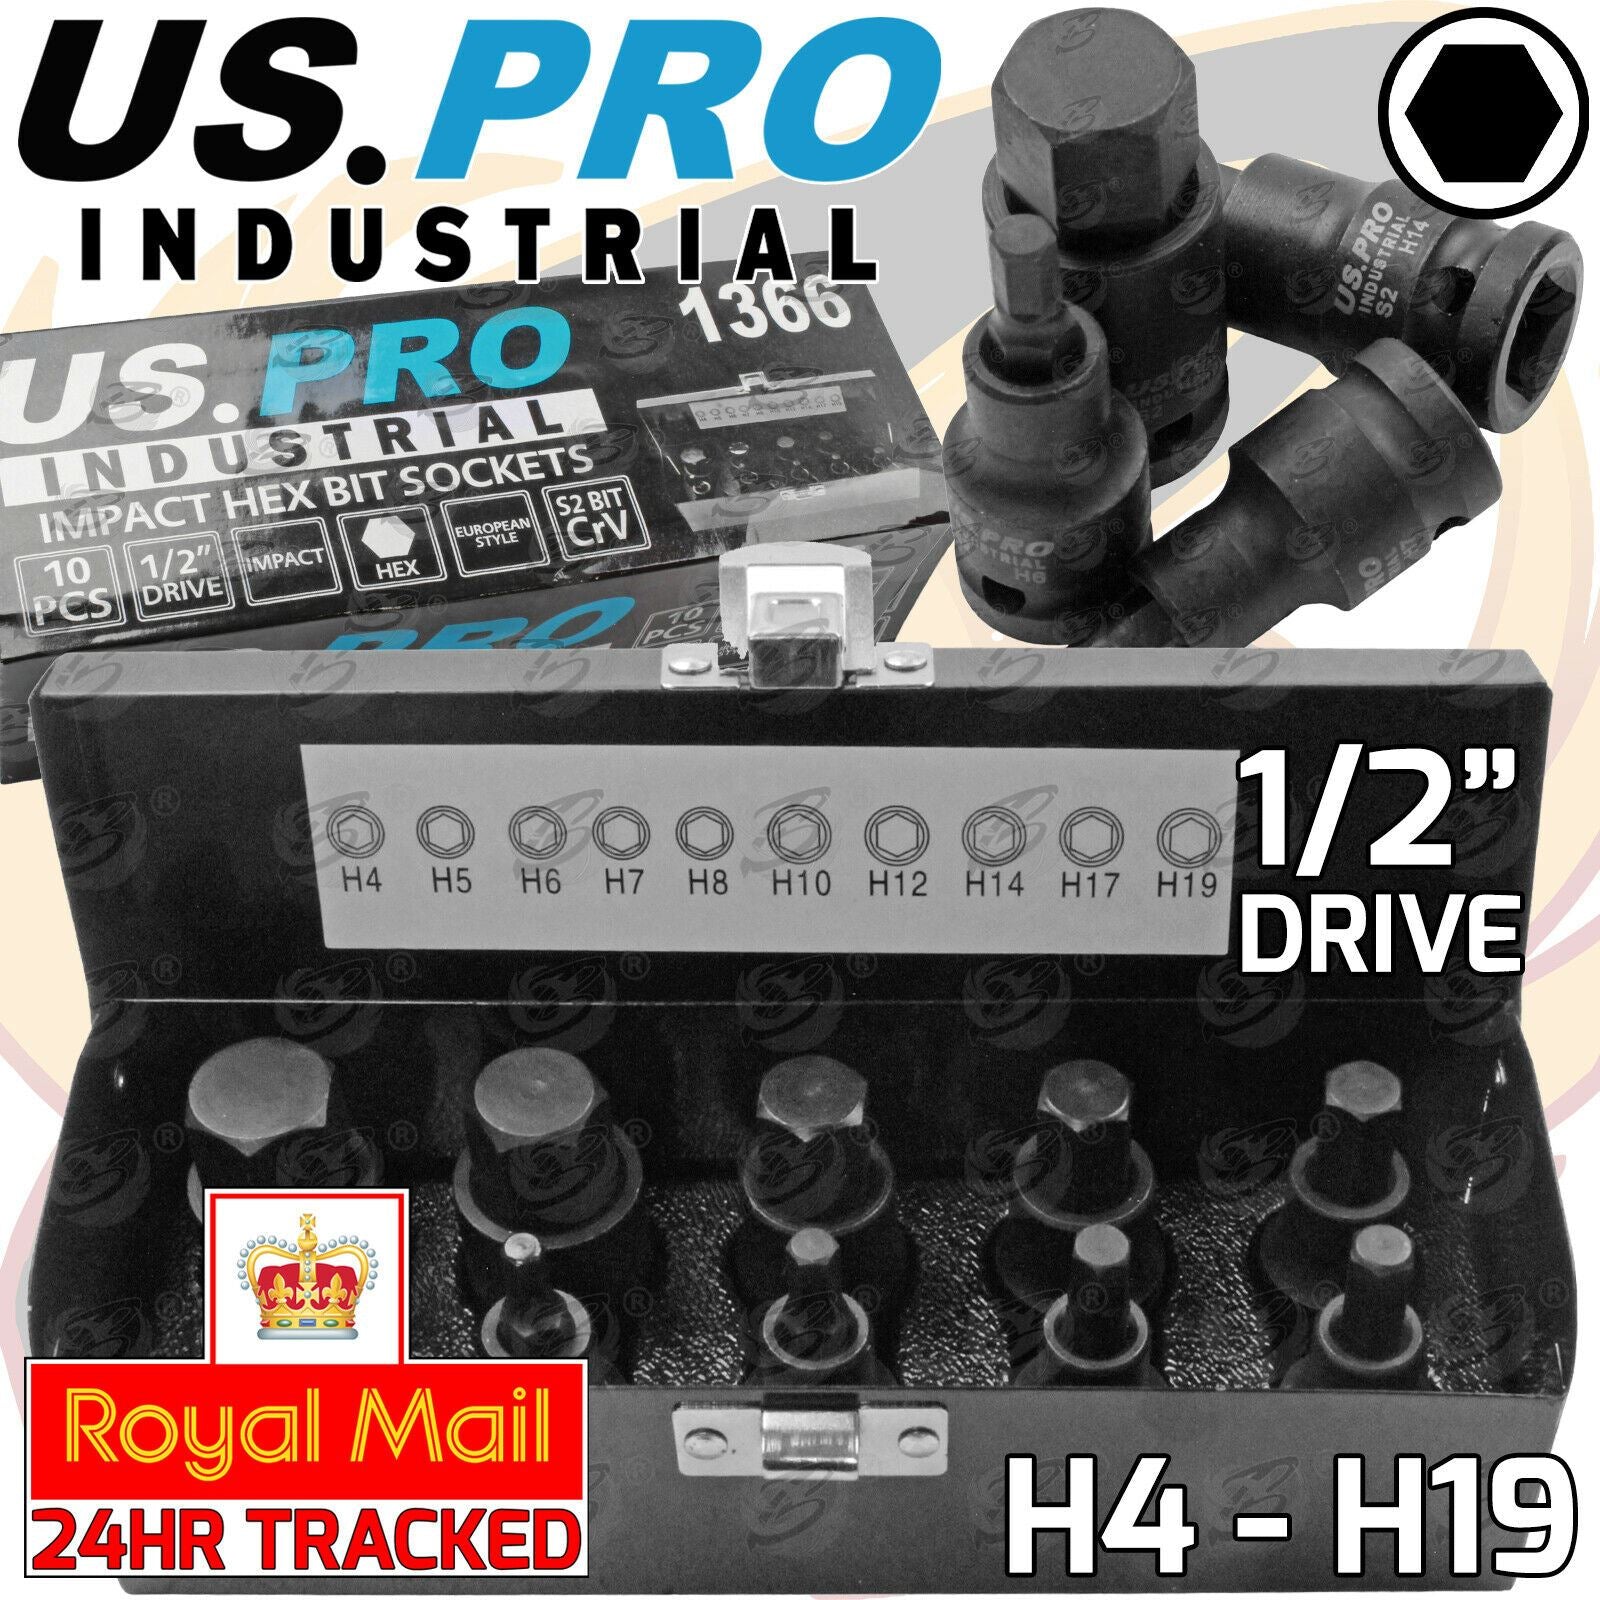 US PRO INDUSTRIAL 10PCS 1/2" DRIVE IMPACT HEX BIT SOCKETS H4 - H19